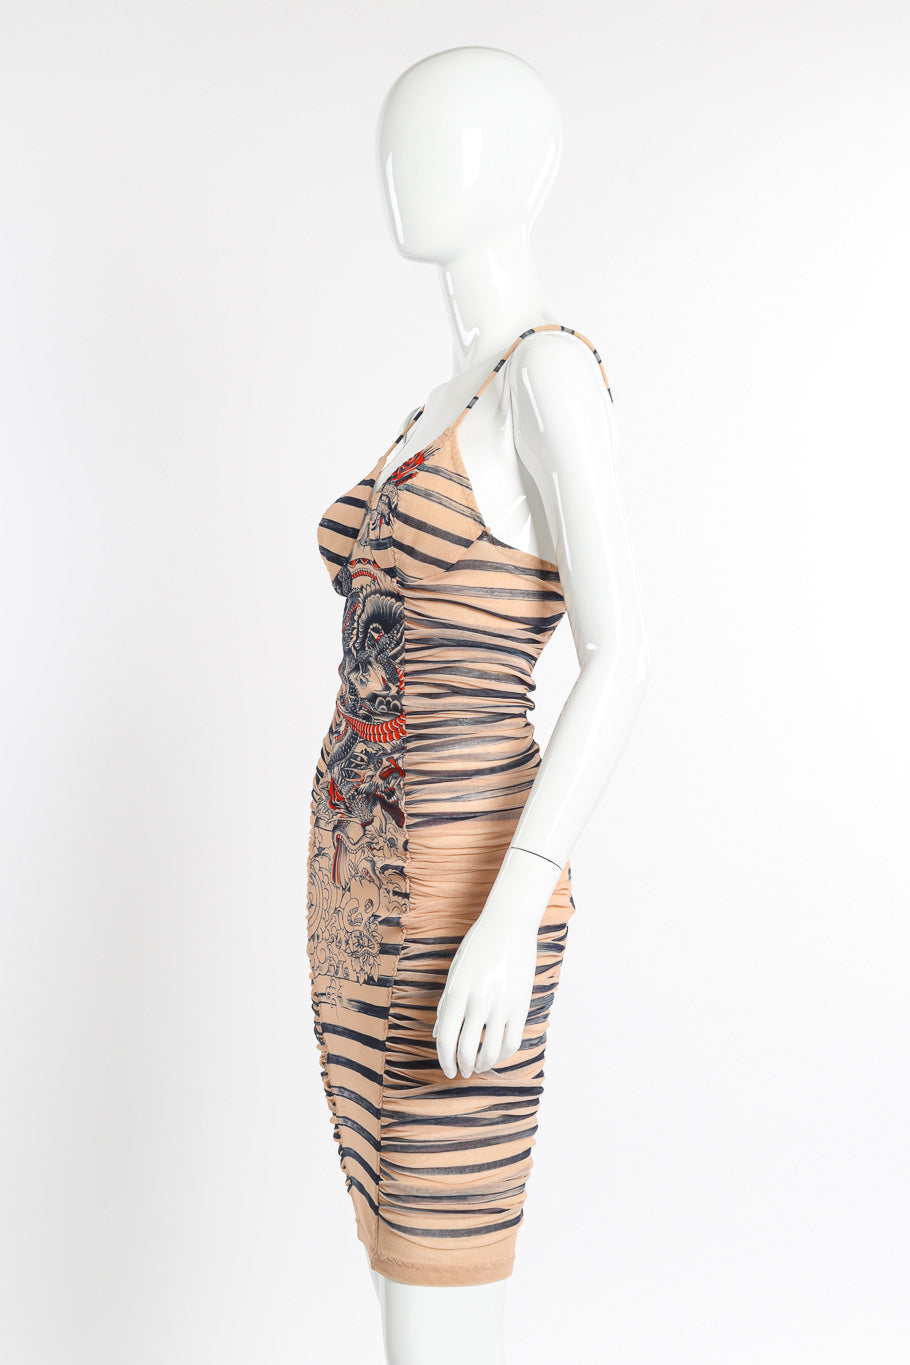 Jean Paul Gaultier 2012 S/S Soleil Tattoo Dress on mannequin side @recessla